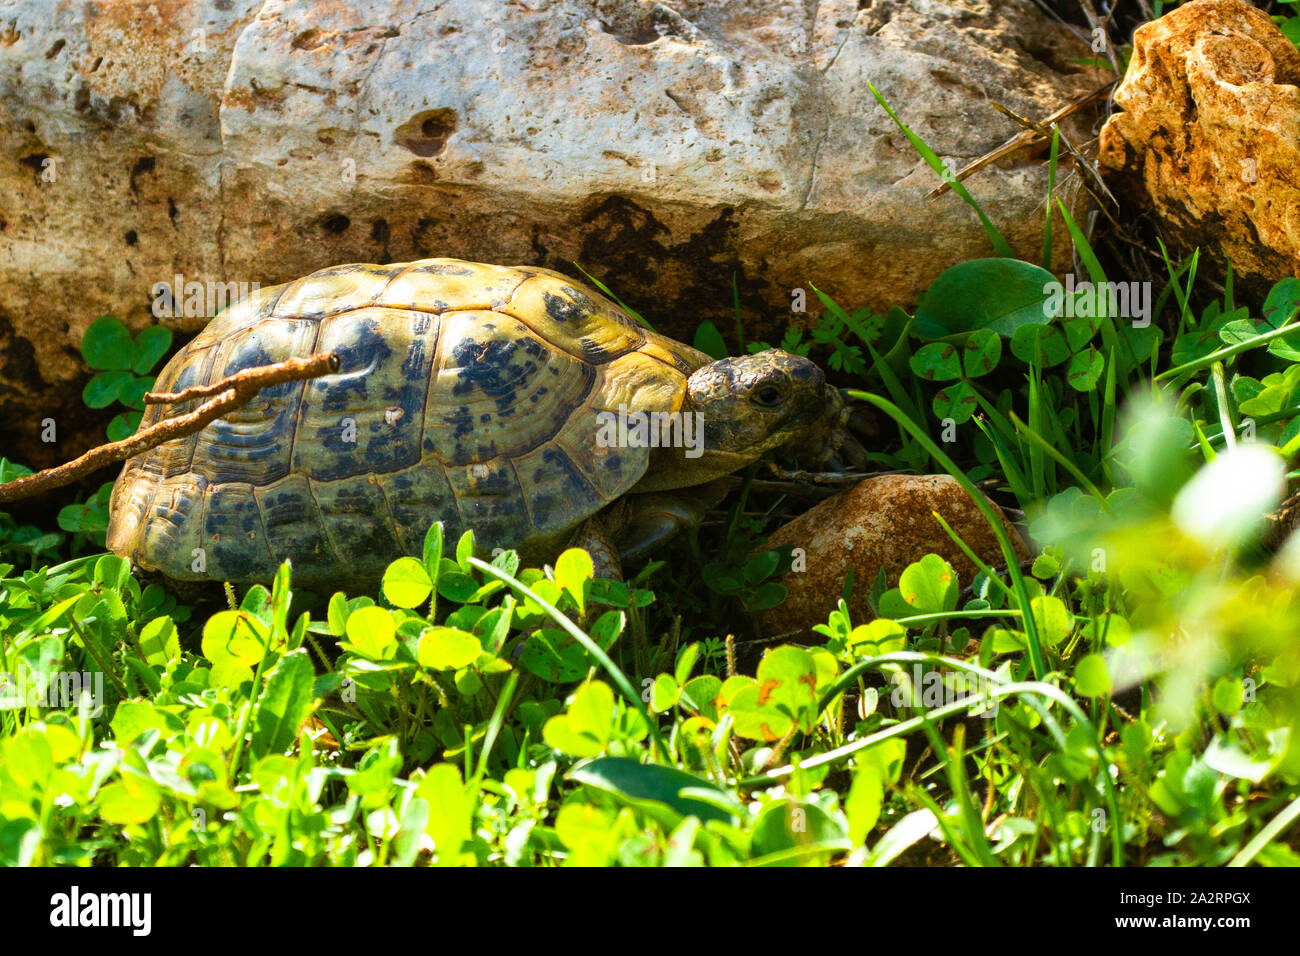 Griechische Landschildkröte (Testudo graeca) צב יבשה מצוי Stockfoto